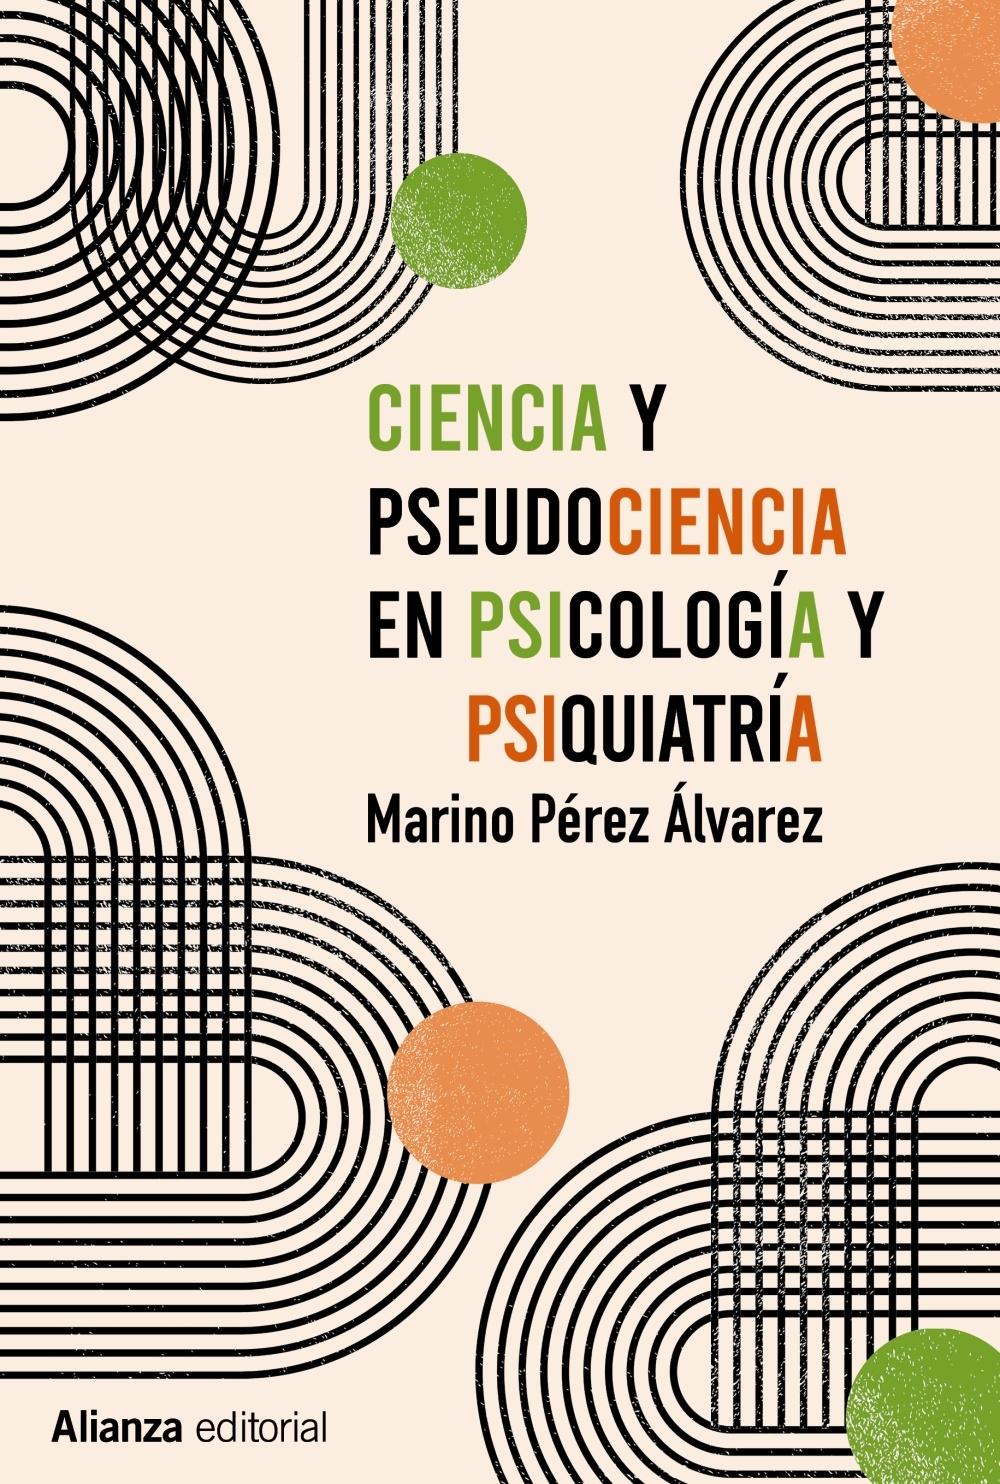 Ciencia y pseudociencia en psicología y psiquiatría "Más allá de la corriente principal"